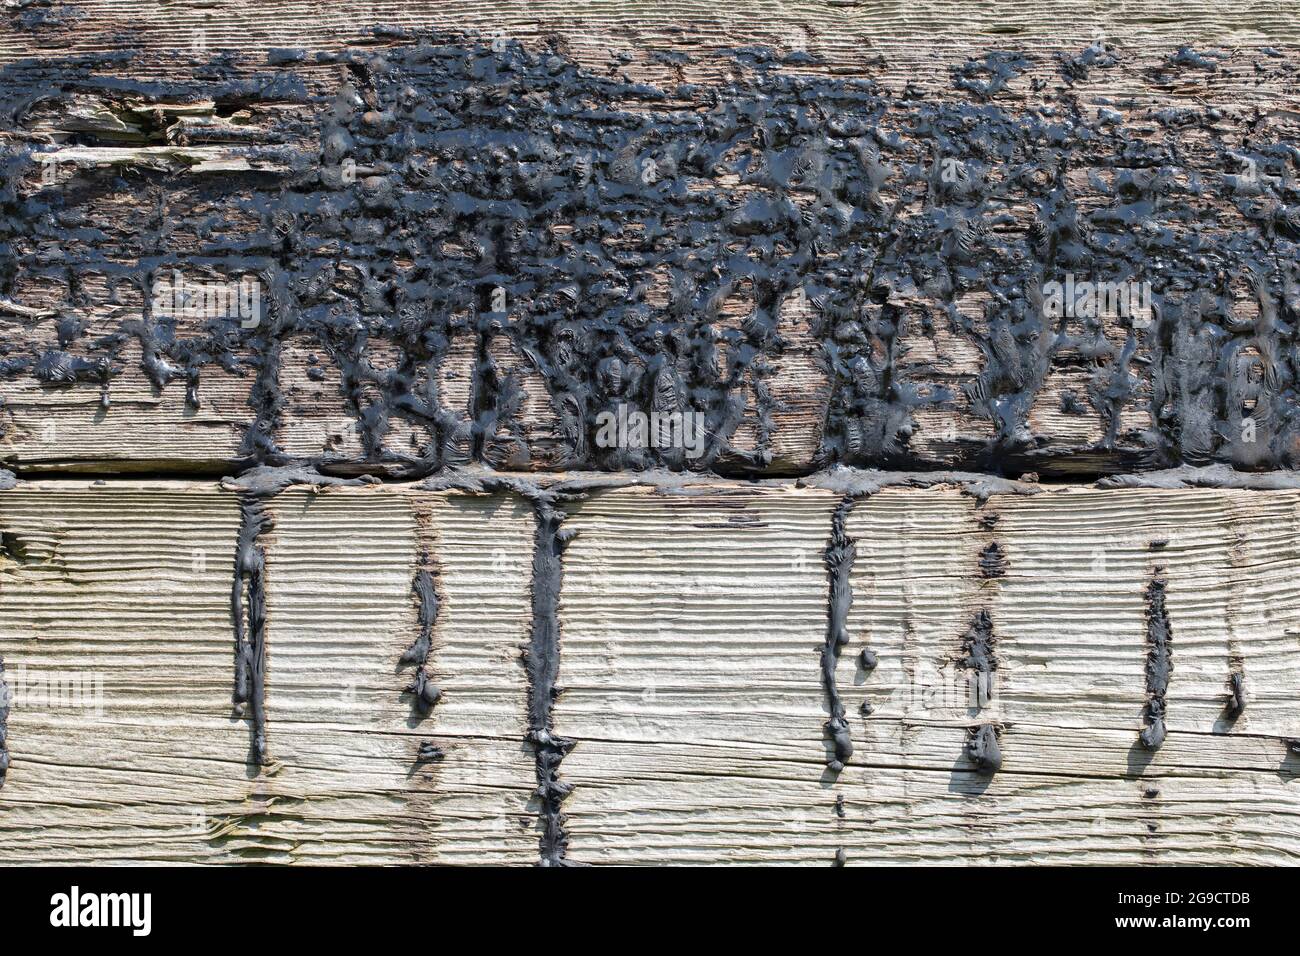 Goudron fondu, maintenant sec, ayant séché sur des traverses de chemin de fer en bois abîmés, avec des anneaux de croissance annuels variables en contraste. Banque D'Images